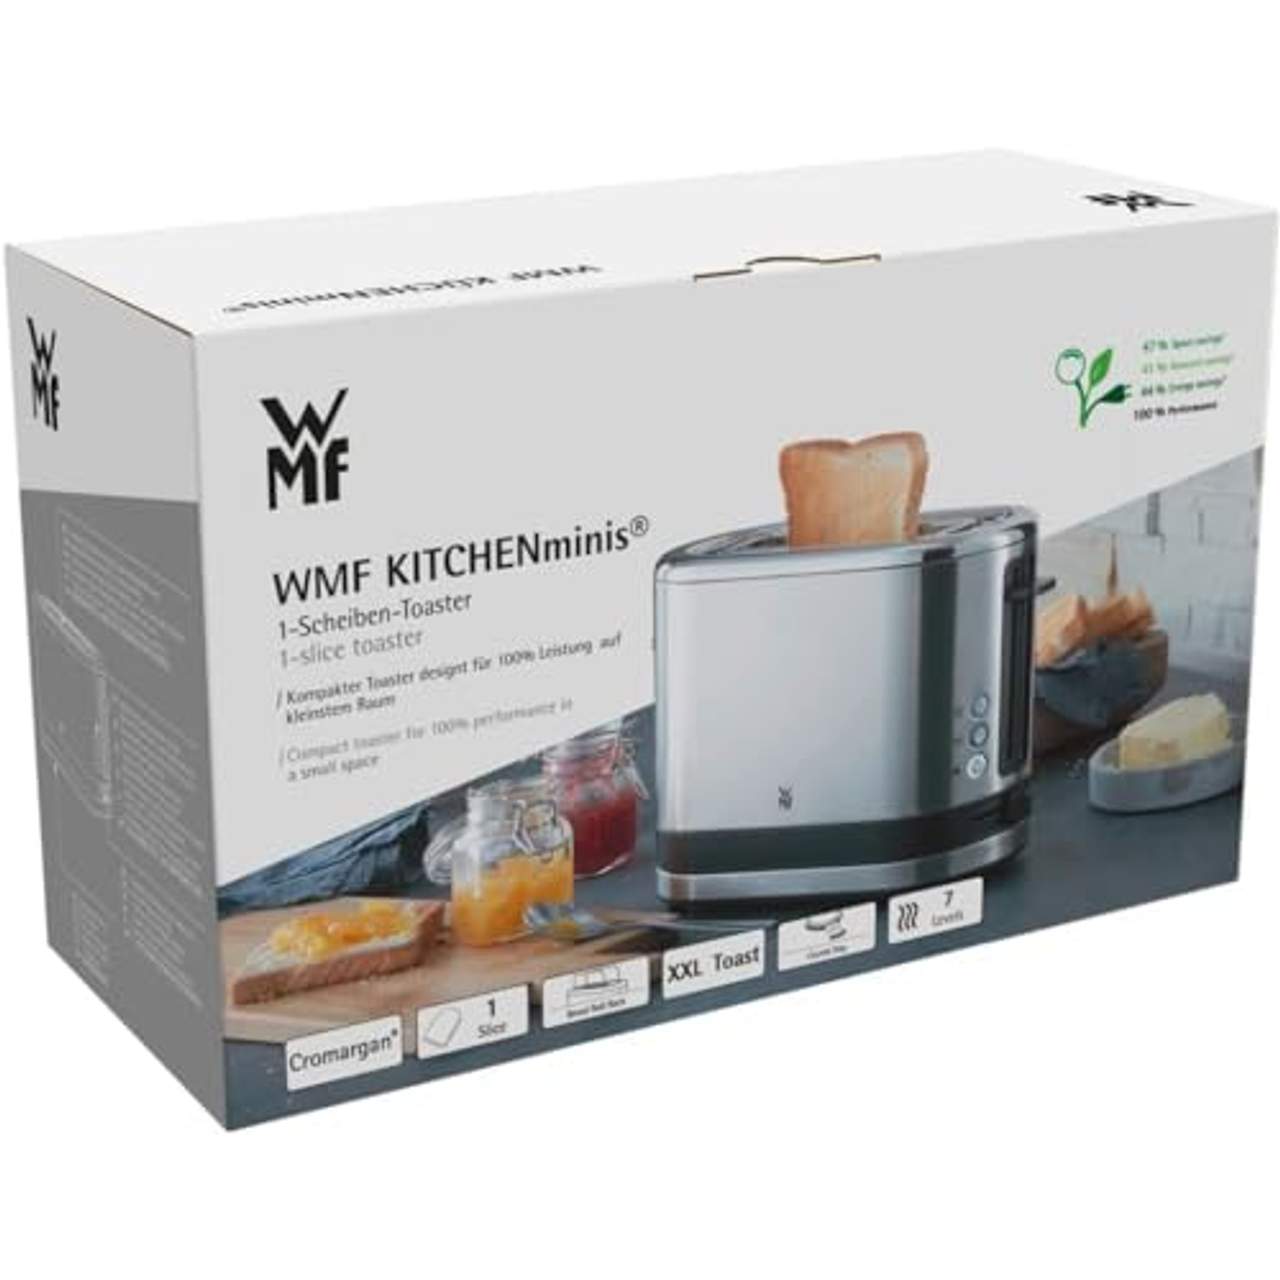 WMF KÜCHENminis 1-Scheiben Toaster Langschlitz XXl-Toast